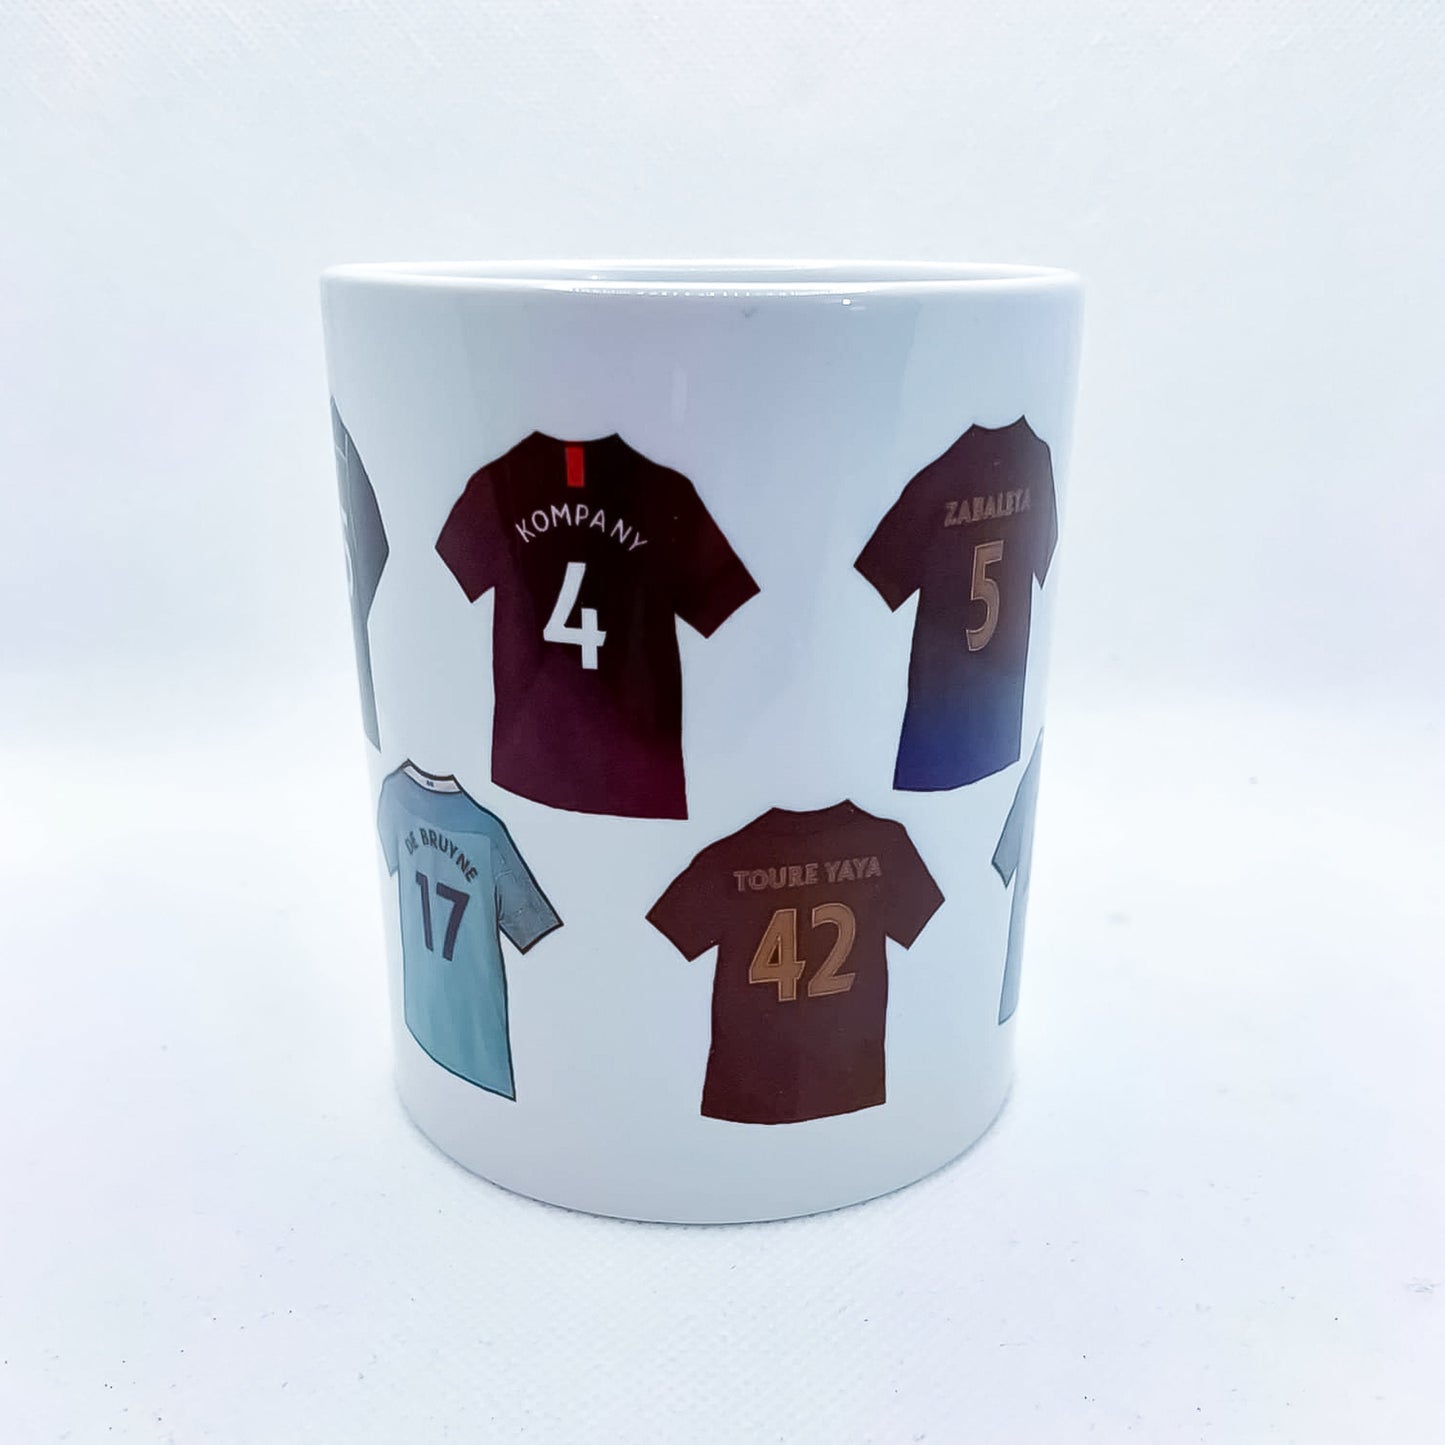 City Legends Shirts Handmade Ceramic Football Mug